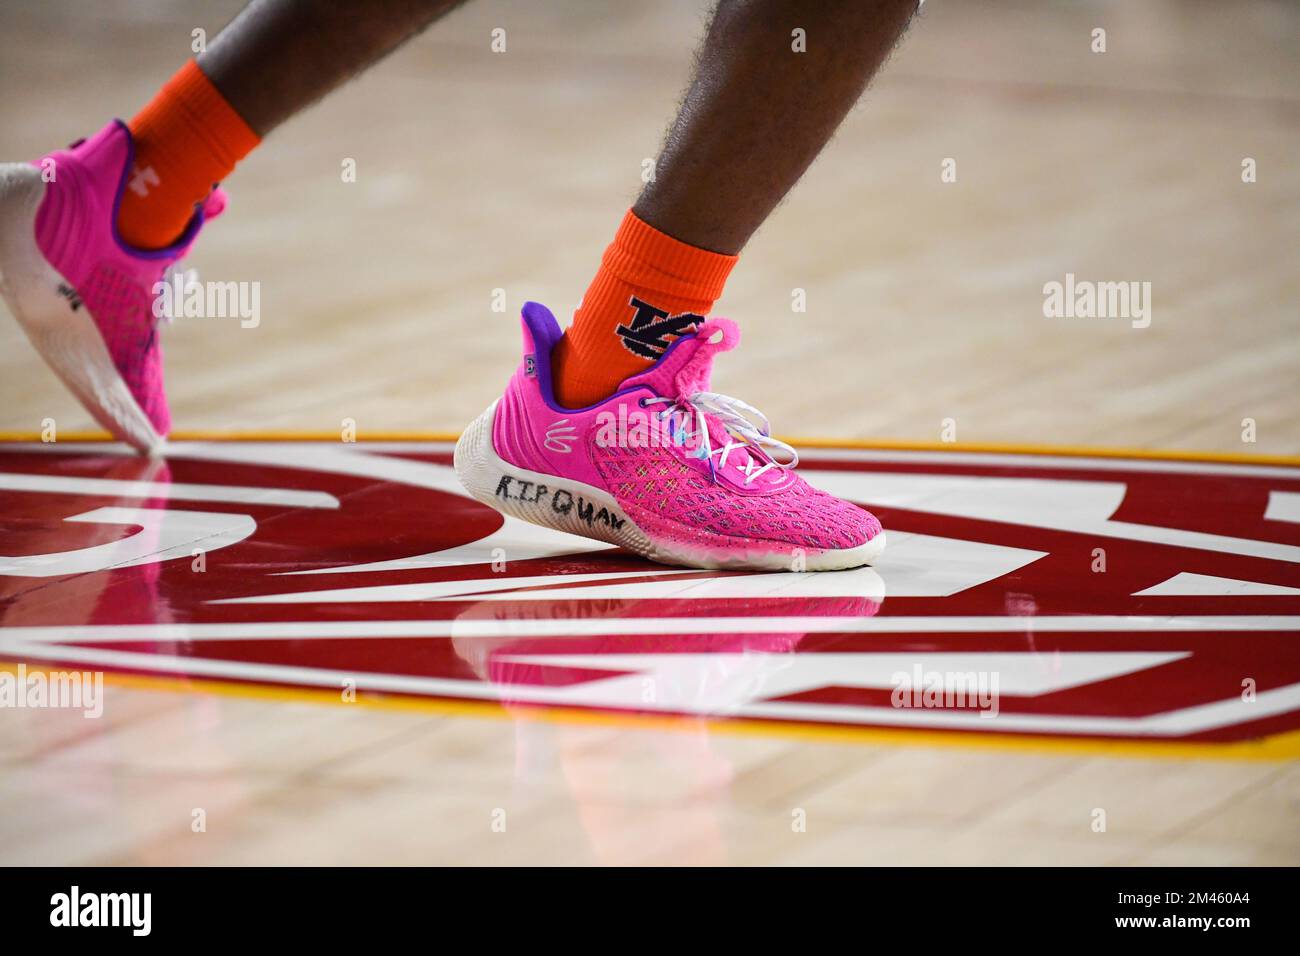 Los zapatos Under Armour Curry Flow 9 usados por el guardia de los Tigres de  Auburn Zep Jasper (12) leían “Rip QUAN” durante un partido de baloncesto de  la NCAA el domingo